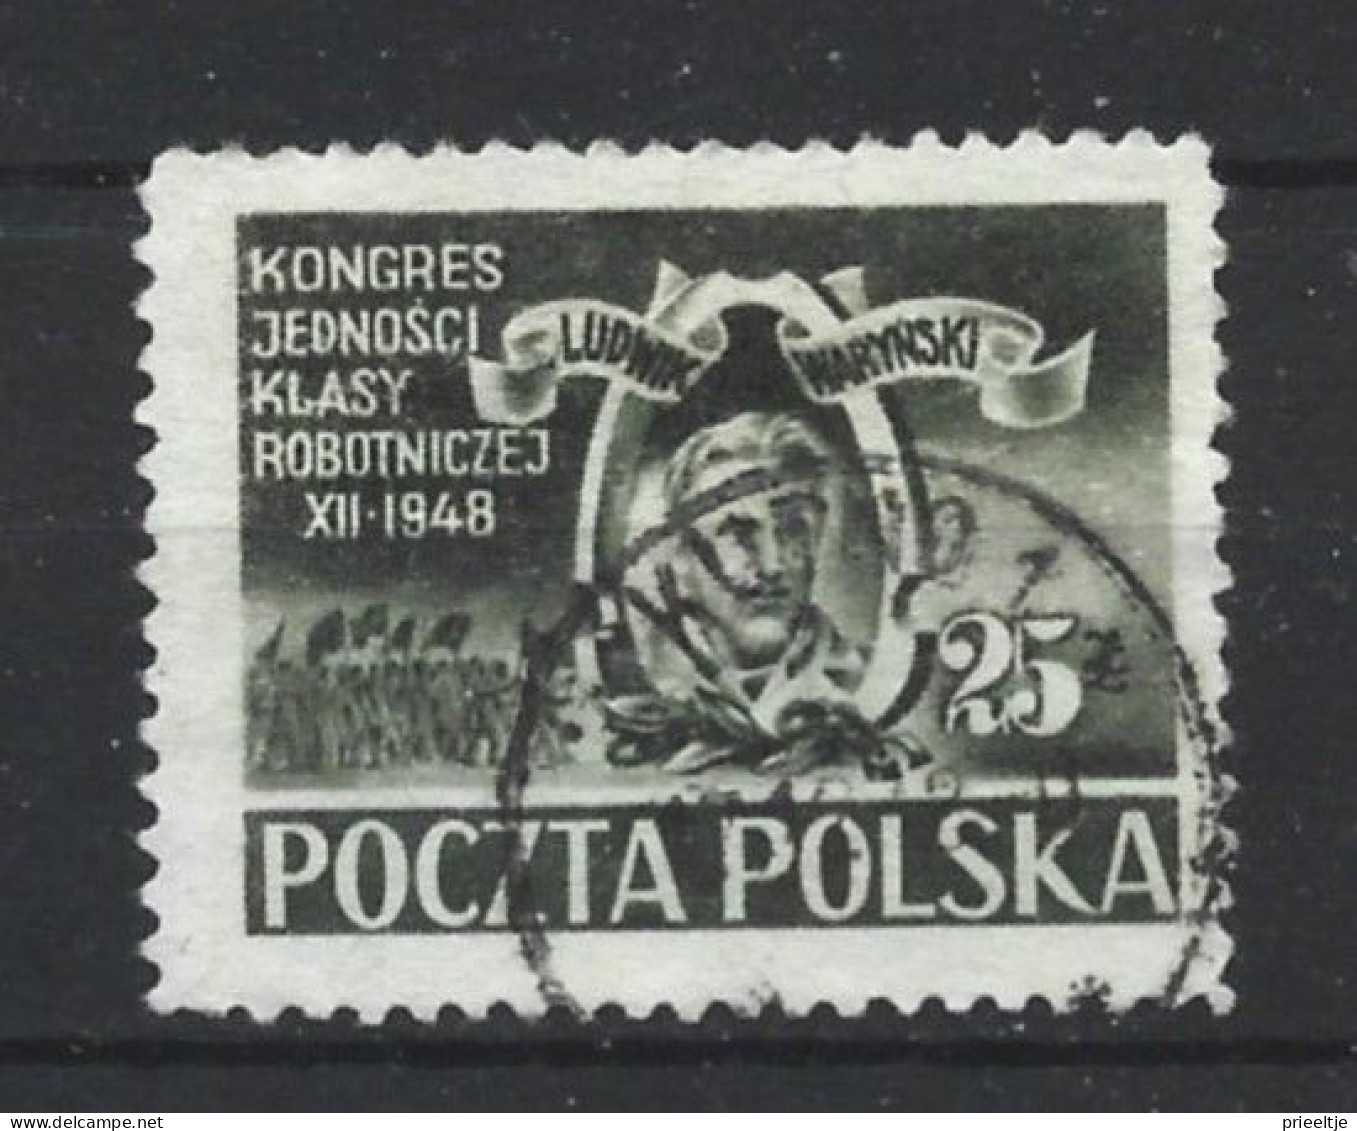 Poland 1948 Worker's Union Congress Y.T. 543 (0) - Oblitérés